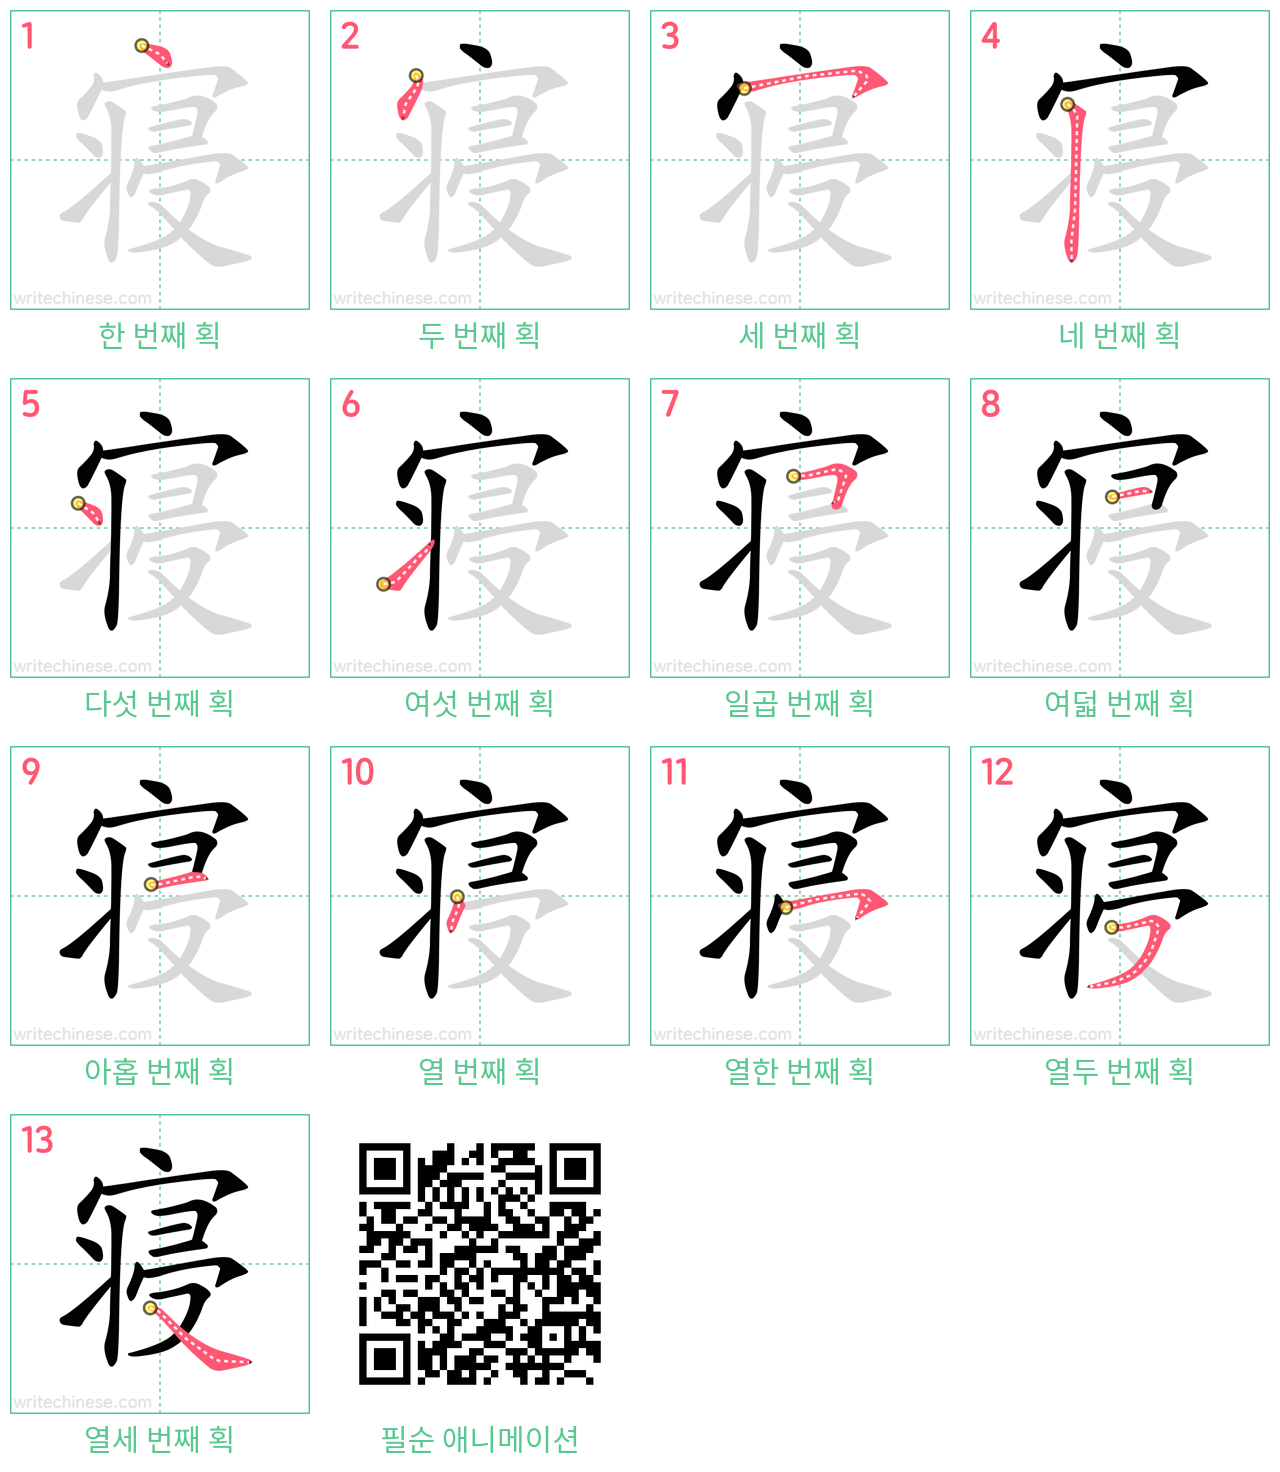 寝 step-by-step stroke order diagrams